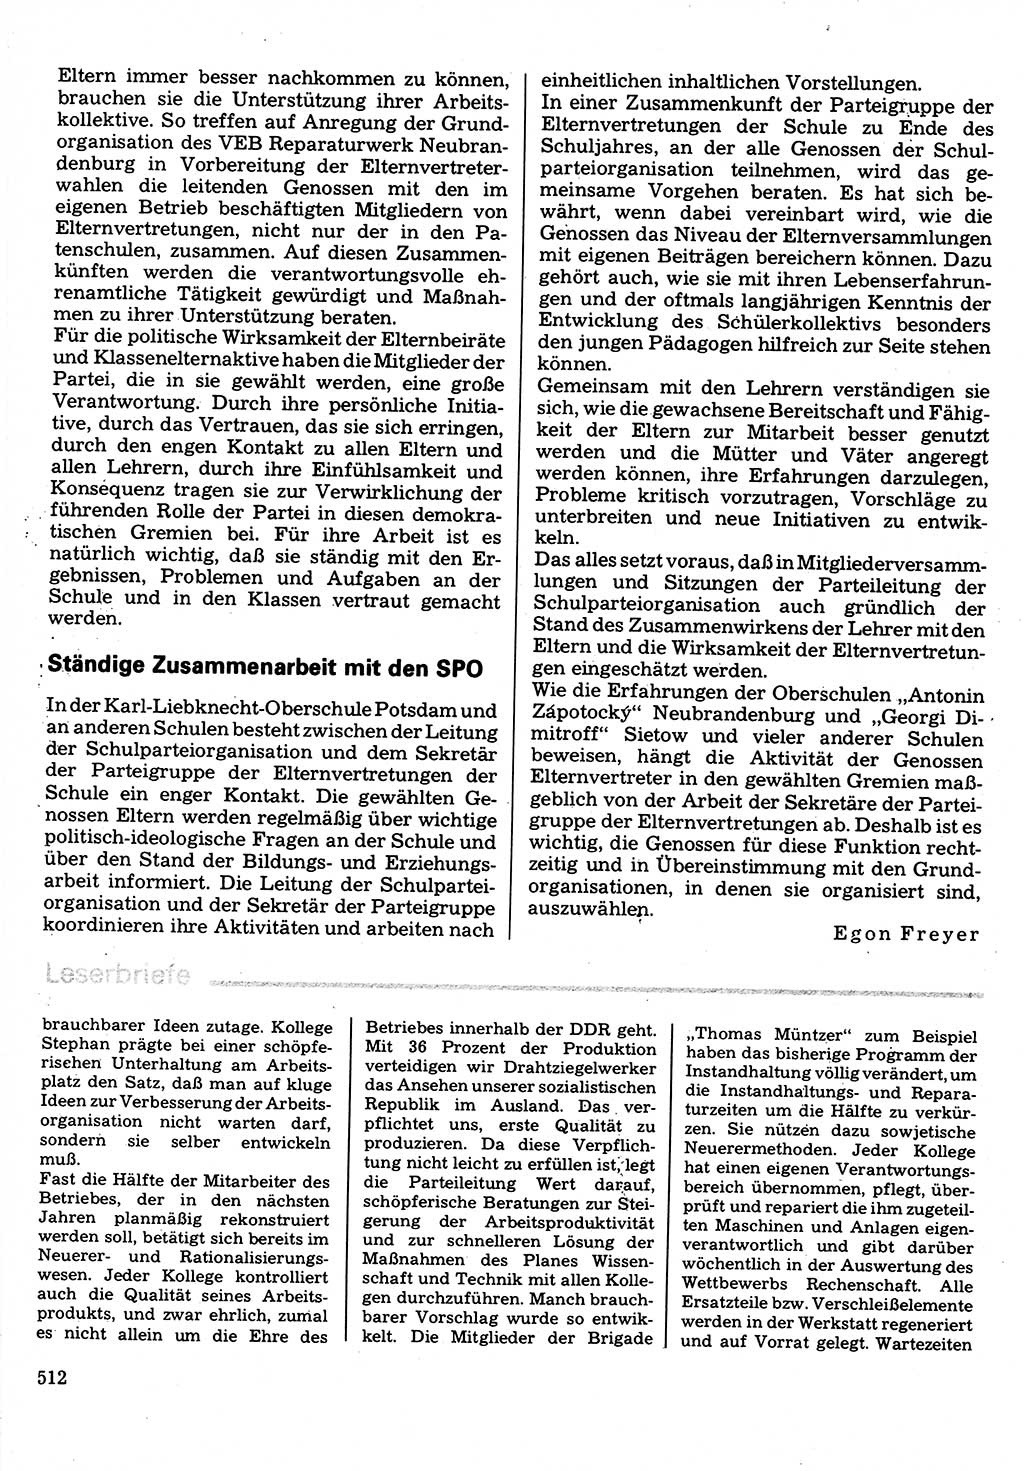 Neuer Weg (NW), Organ des Zentralkomitees (ZK) der SED (Sozialistische Einheitspartei Deutschlands) für Fragen des Parteilebens, 32. Jahrgang [Deutsche Demokratische Republik (DDR)] 1977, Seite 512 (NW ZK SED DDR 1977, S. 512)